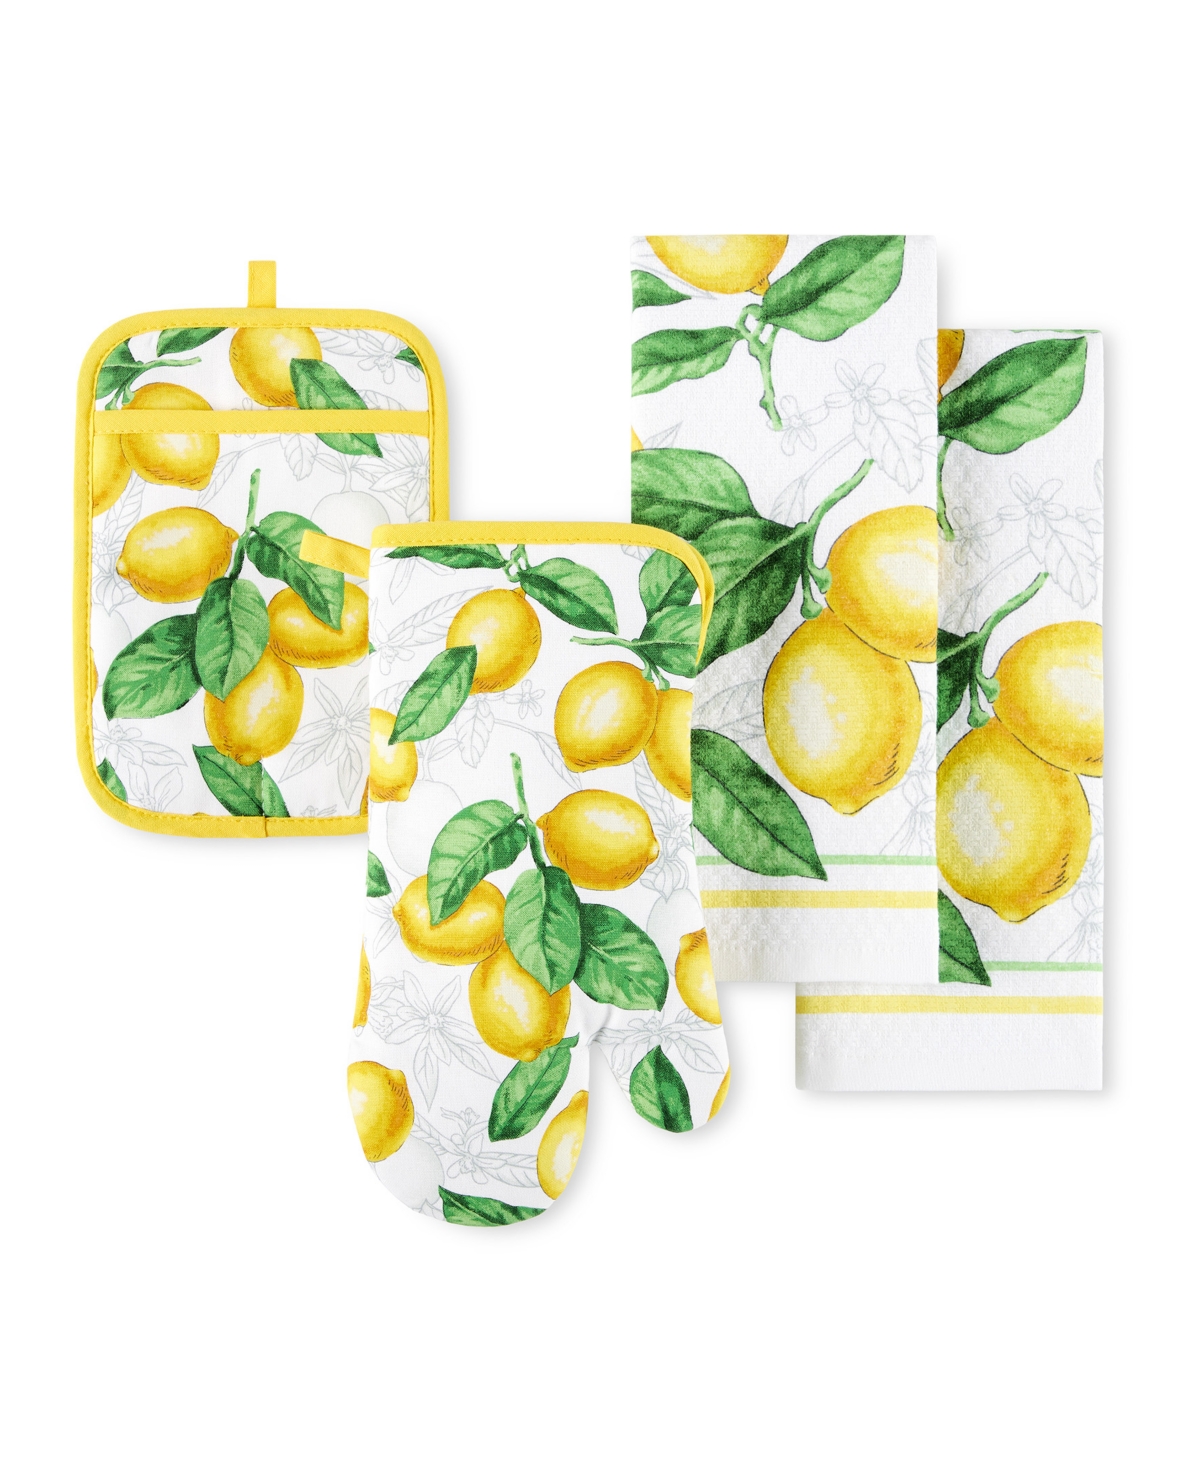 Lots of Lemons Modern Kitchen Towel, Oven Mitt, Potholder 4-Pack Set - White, Yellow